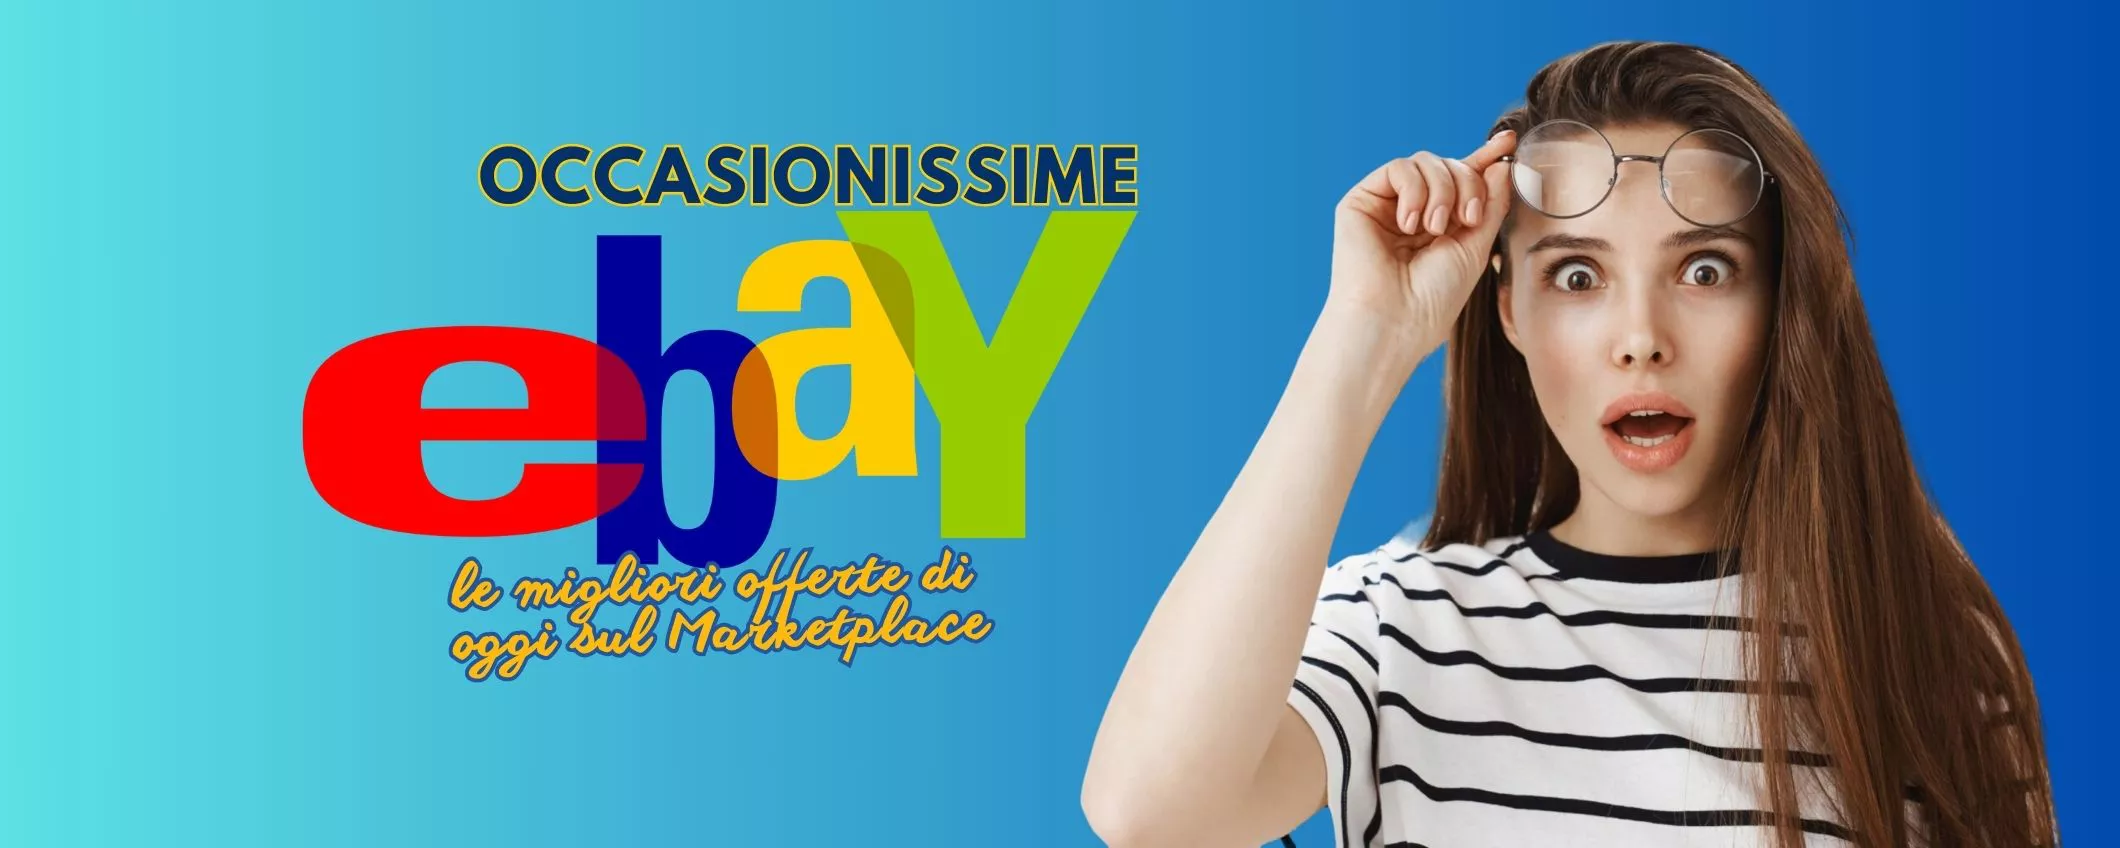 OCCASIONISSIME eBay: le migliori offerte di oggi sul Marketplace, anche promo eDays